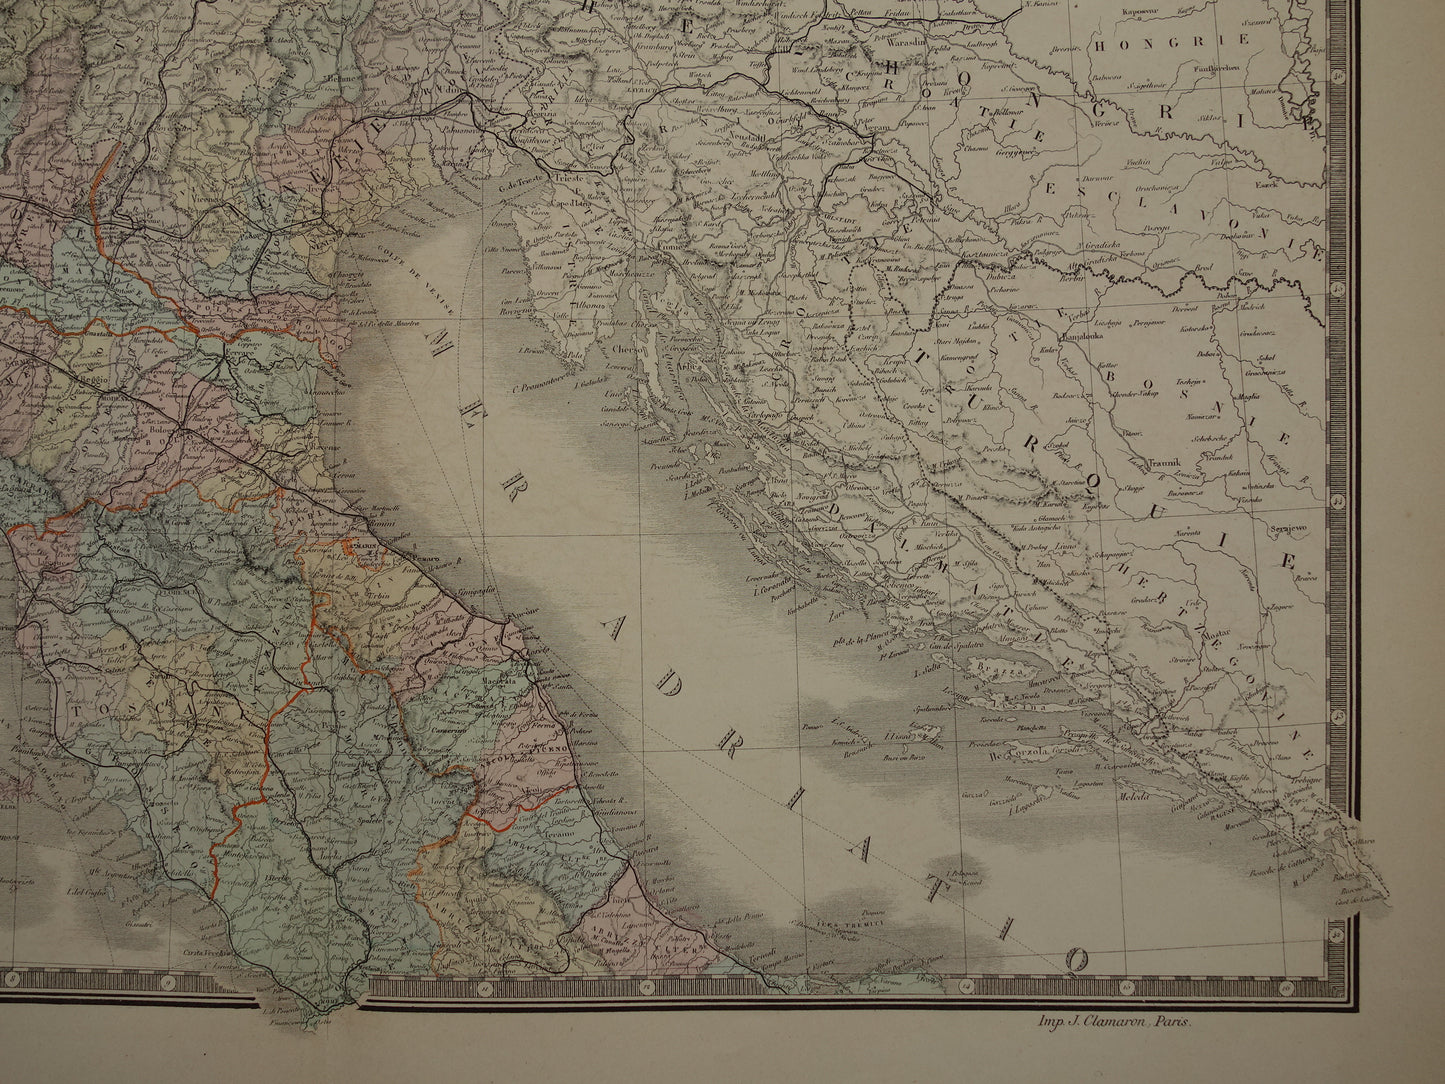 ITALIË oude kaart van Noord-Italië Grote originele antieke landkaart van Noord-Italië uit 1876